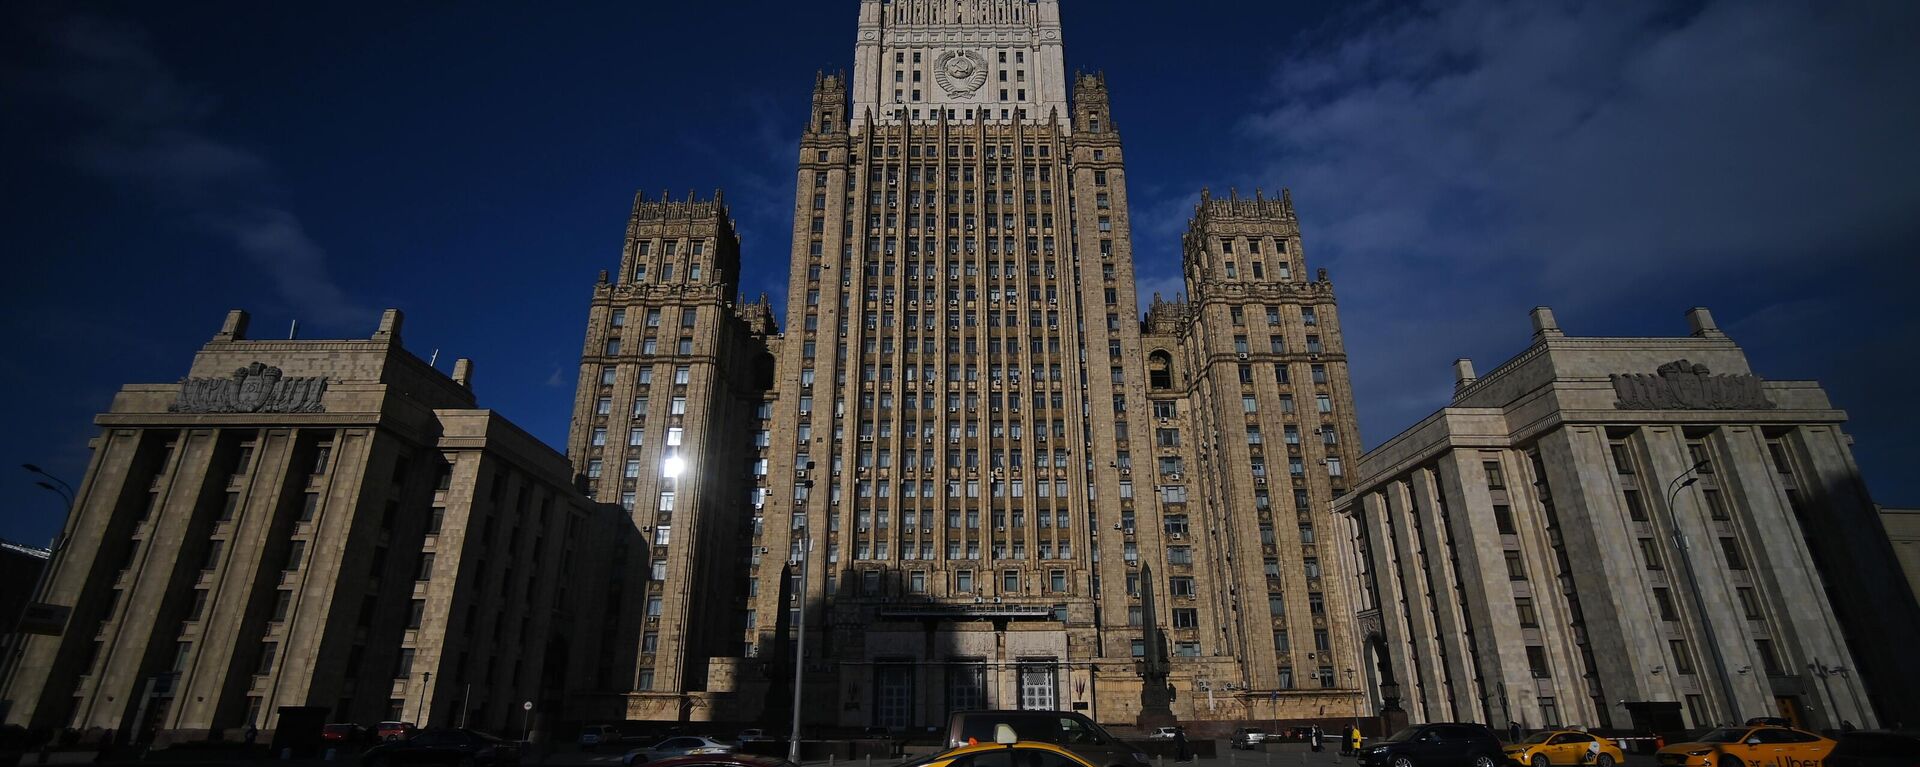 Rusya Federasyonu Dışişleri Bakanlığı'nın Moskova'daki binası. - Sputnik Türkiye, 1920, 06.06.2022